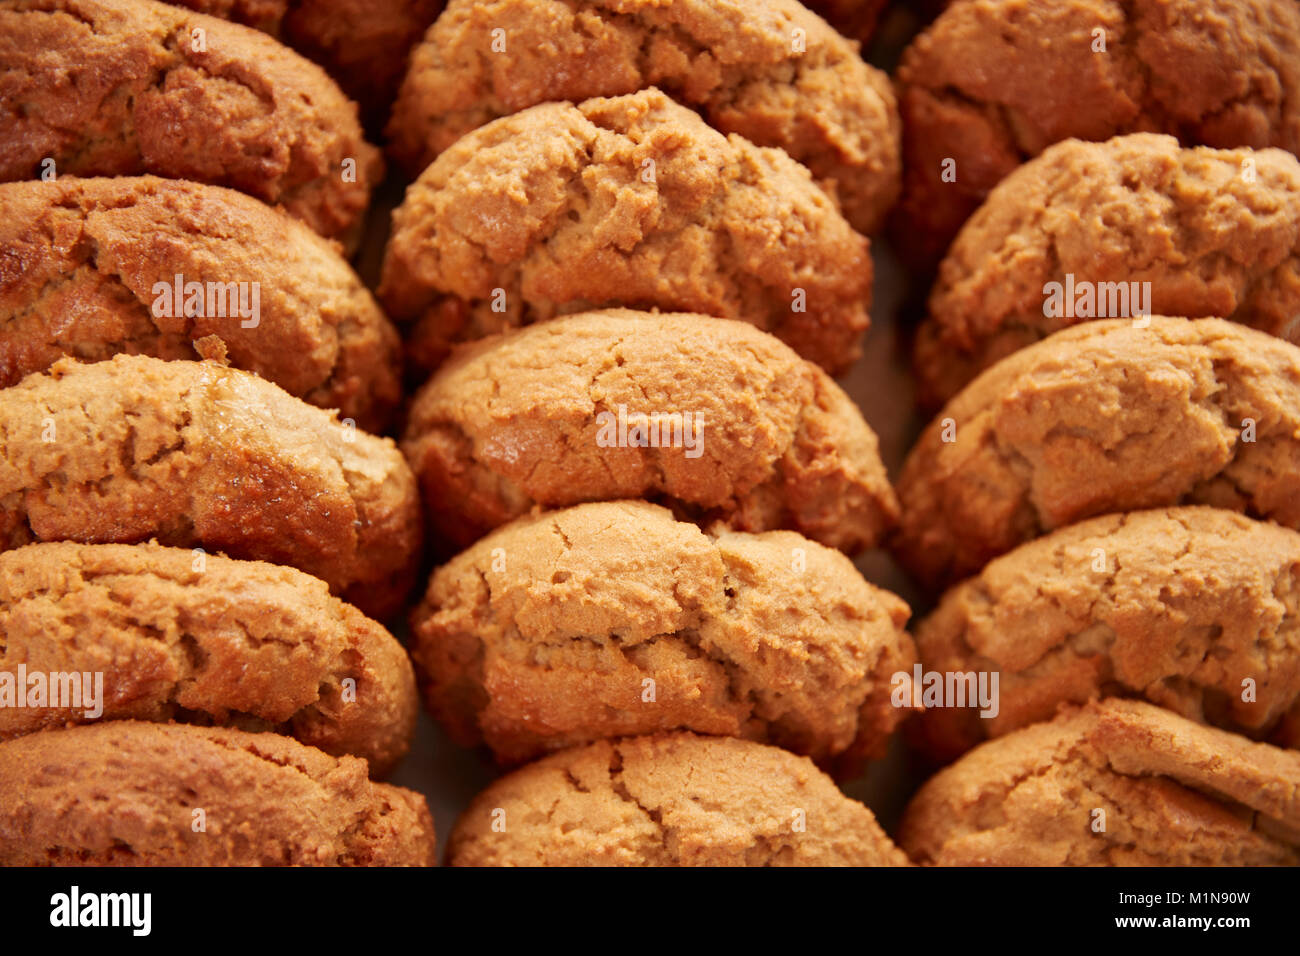 Display Of Freshly Baked Cookies In Coffee Shop Stock Photo